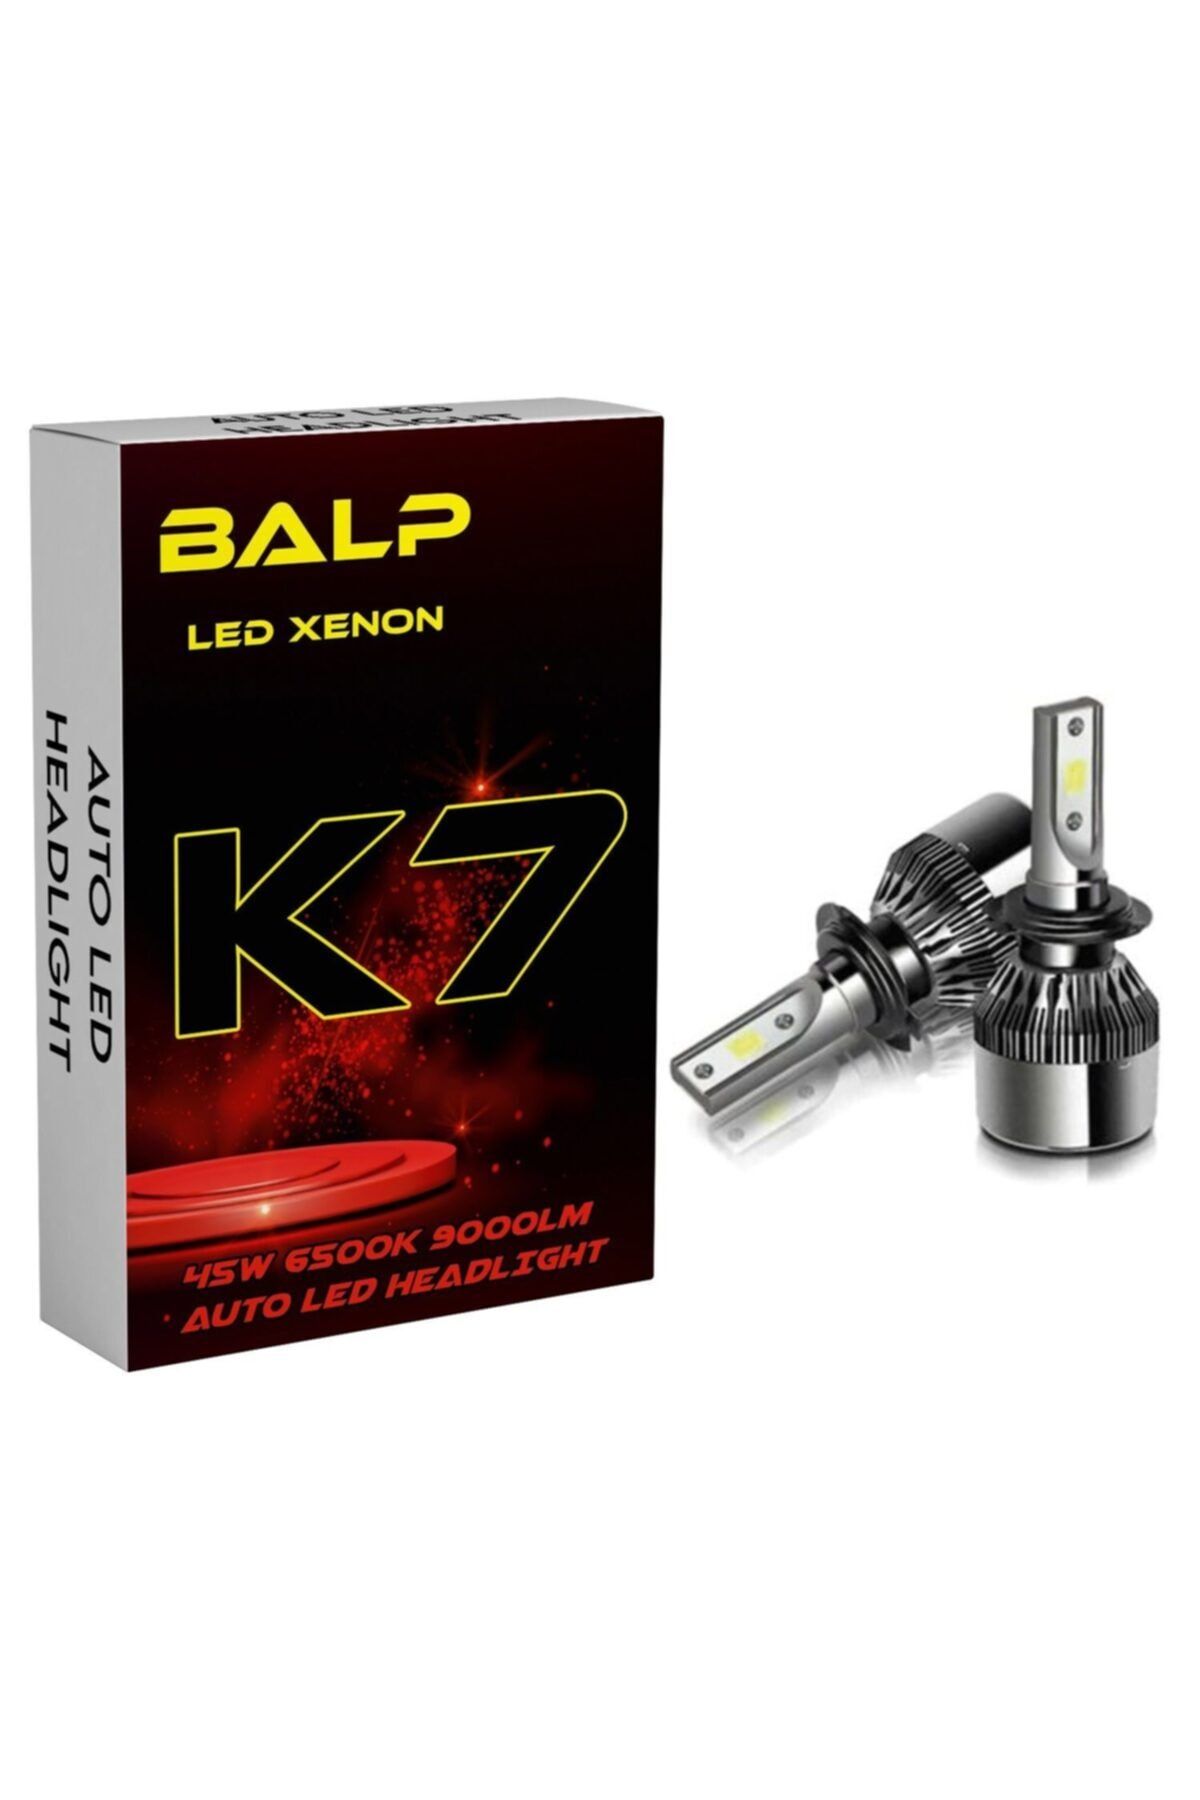 BALP K7 Beyaz Renk Led Zenon H4 Uzun Kısa Led Xenon 45w 9000lm Far Ampülü Şimşek Etkili